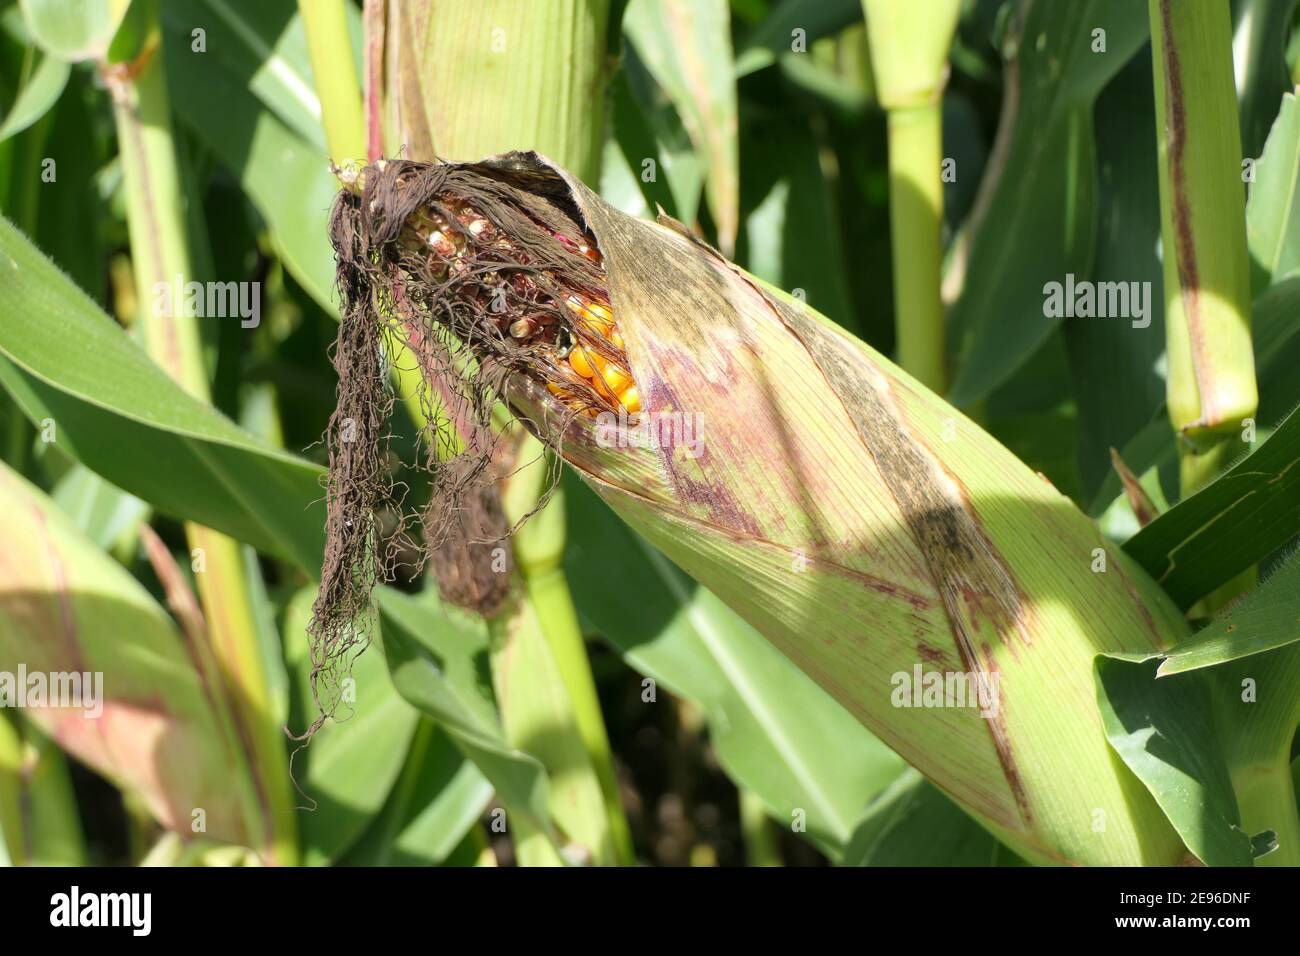 Gros plan de cornB mûrs et demi ouvert avec des grains dorés mûrs, dans le champ de maïs Banque D'Images